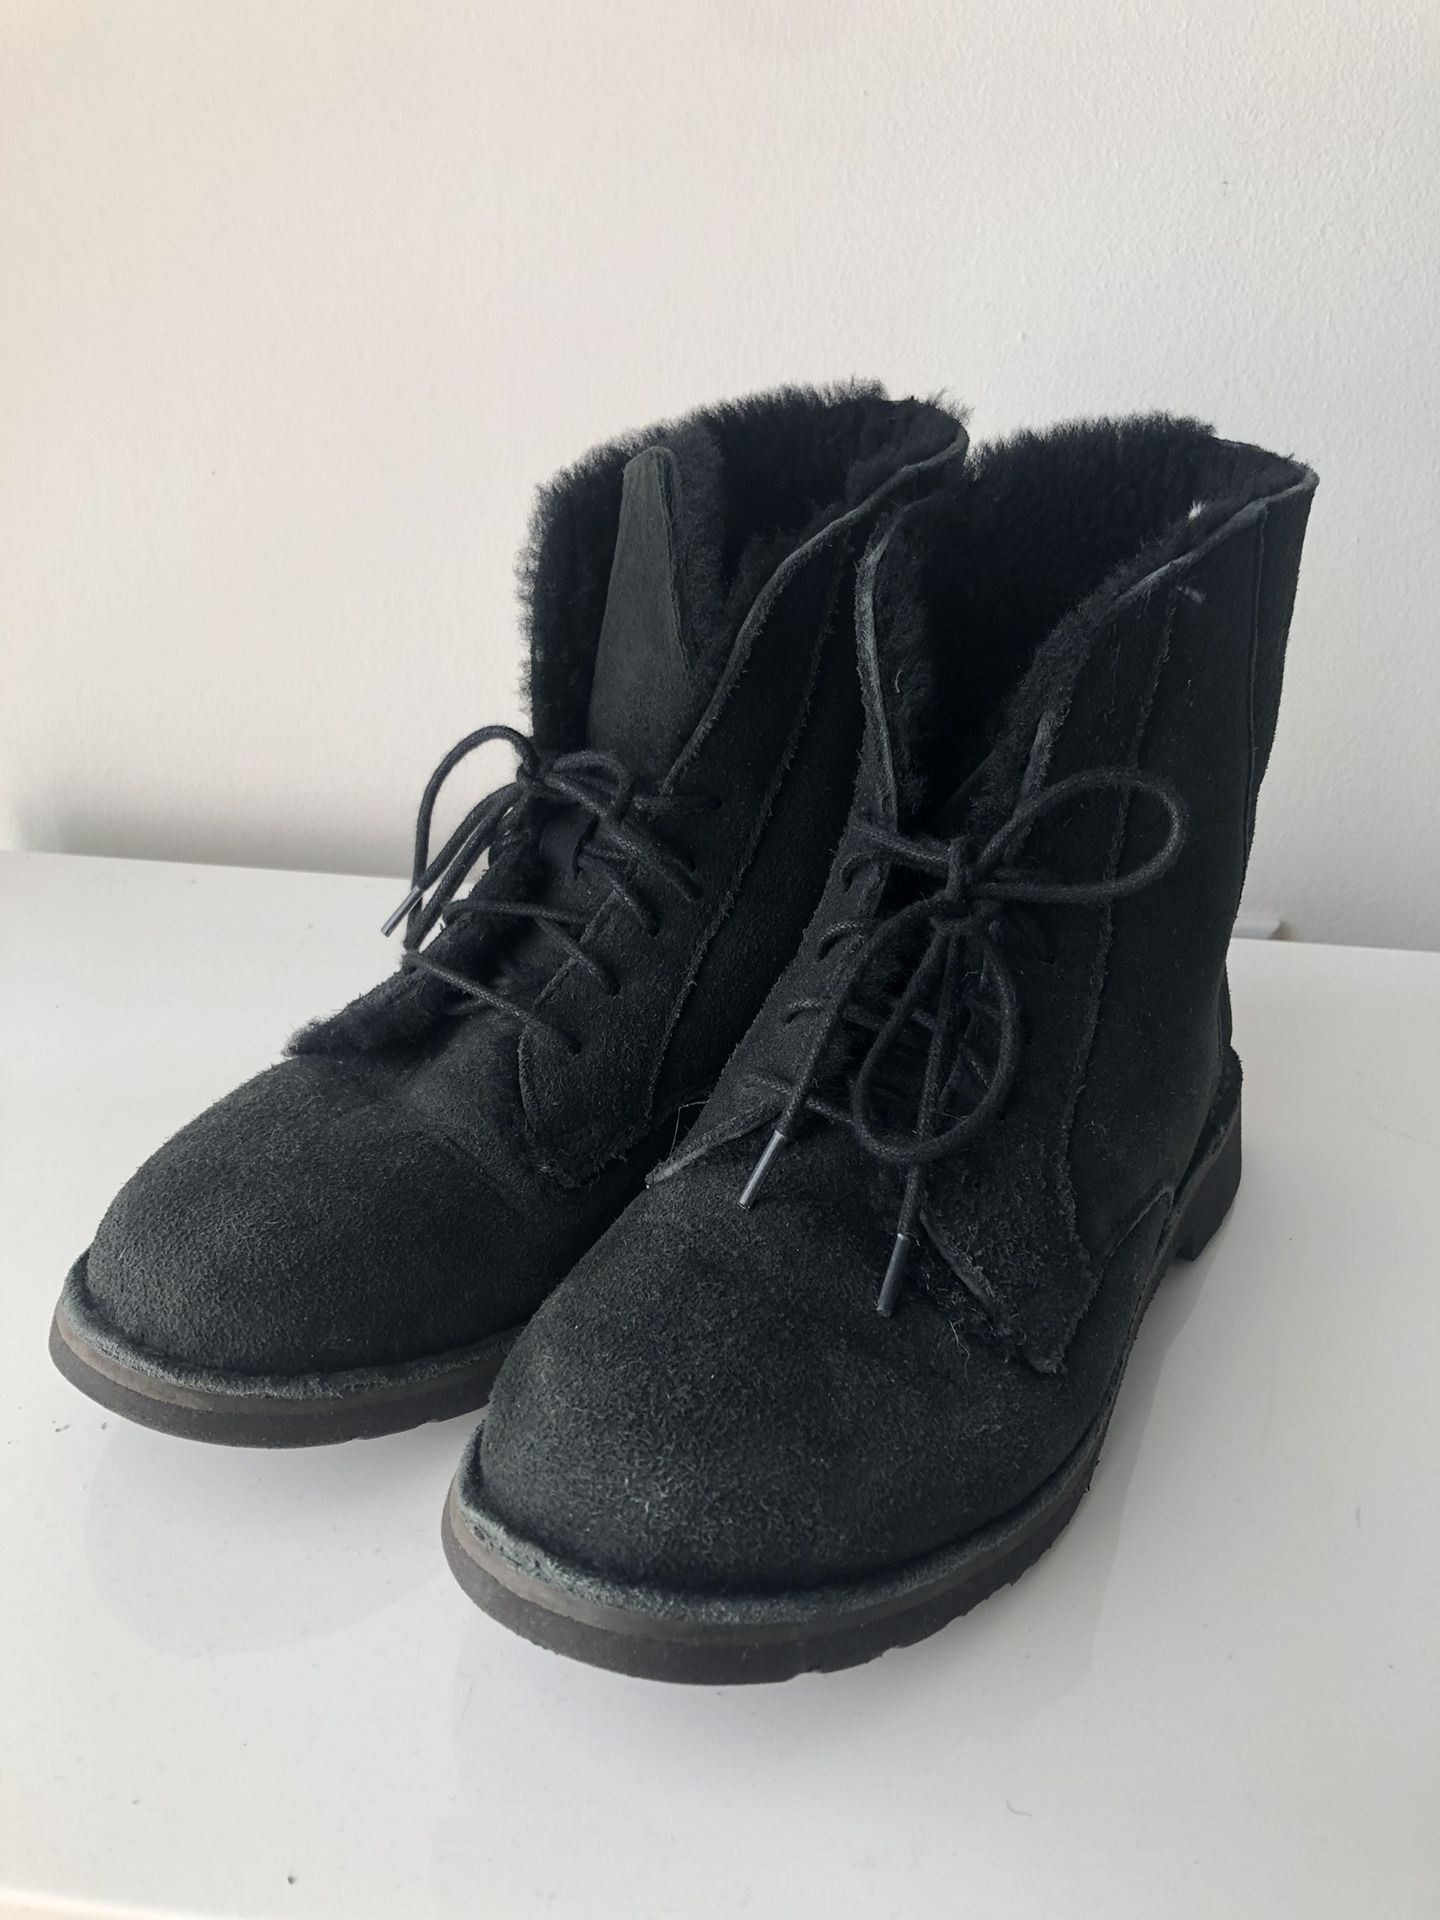 UGG Black Boots - US 8 1/2